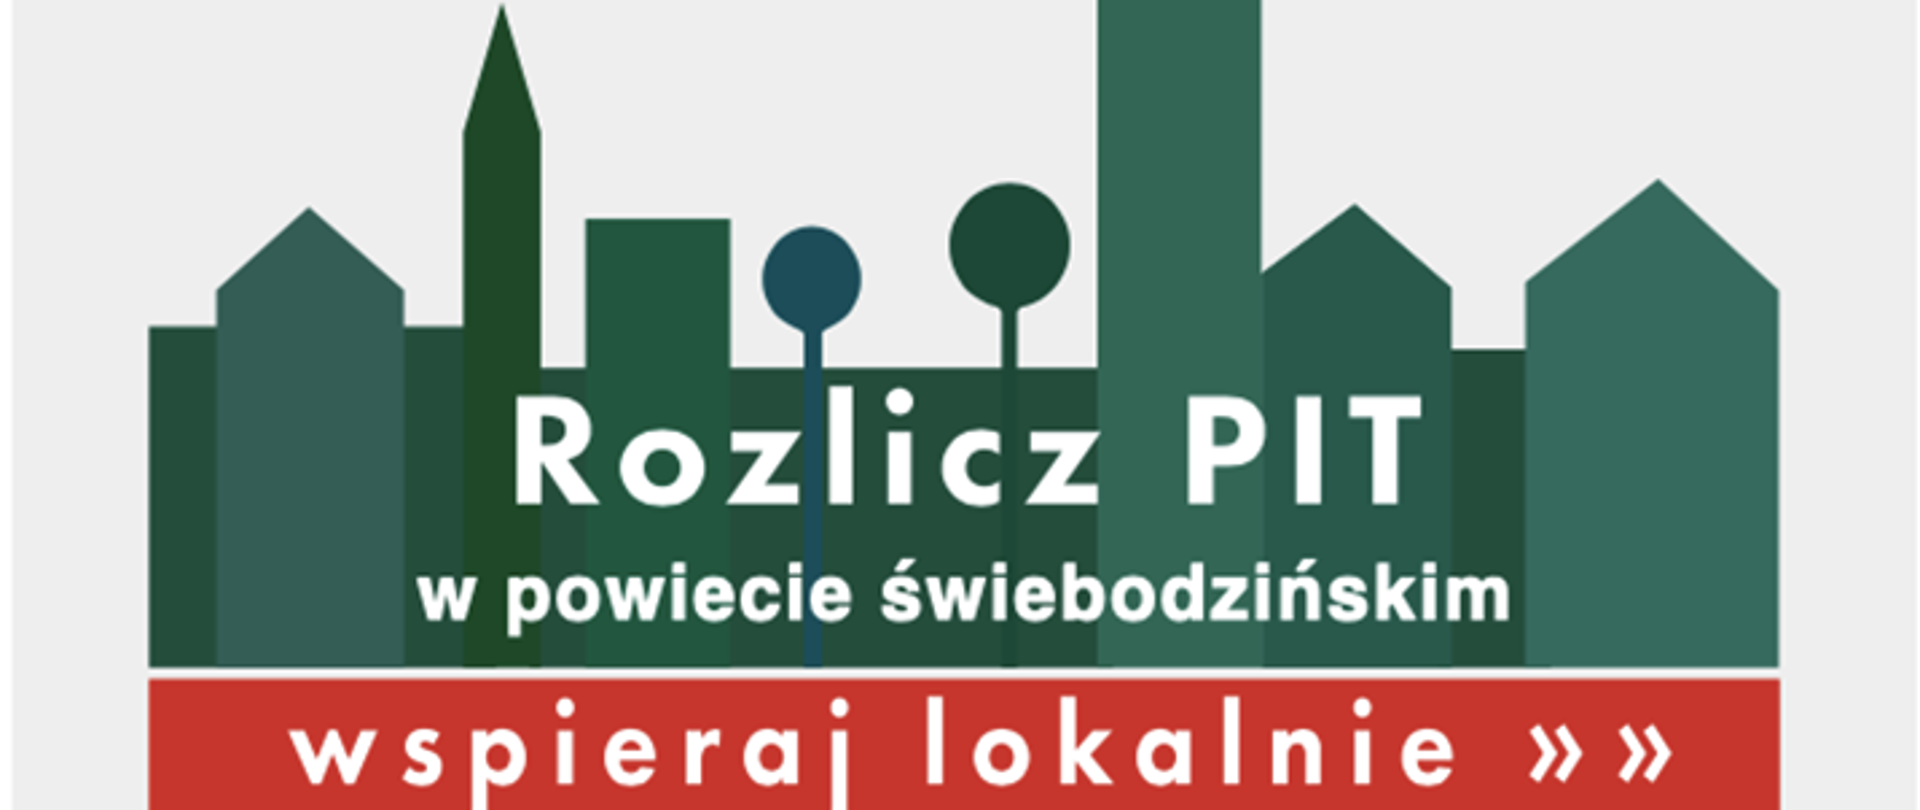 plakat informujący o akcji rozlicz pit w Powiecie Świebodzińskim